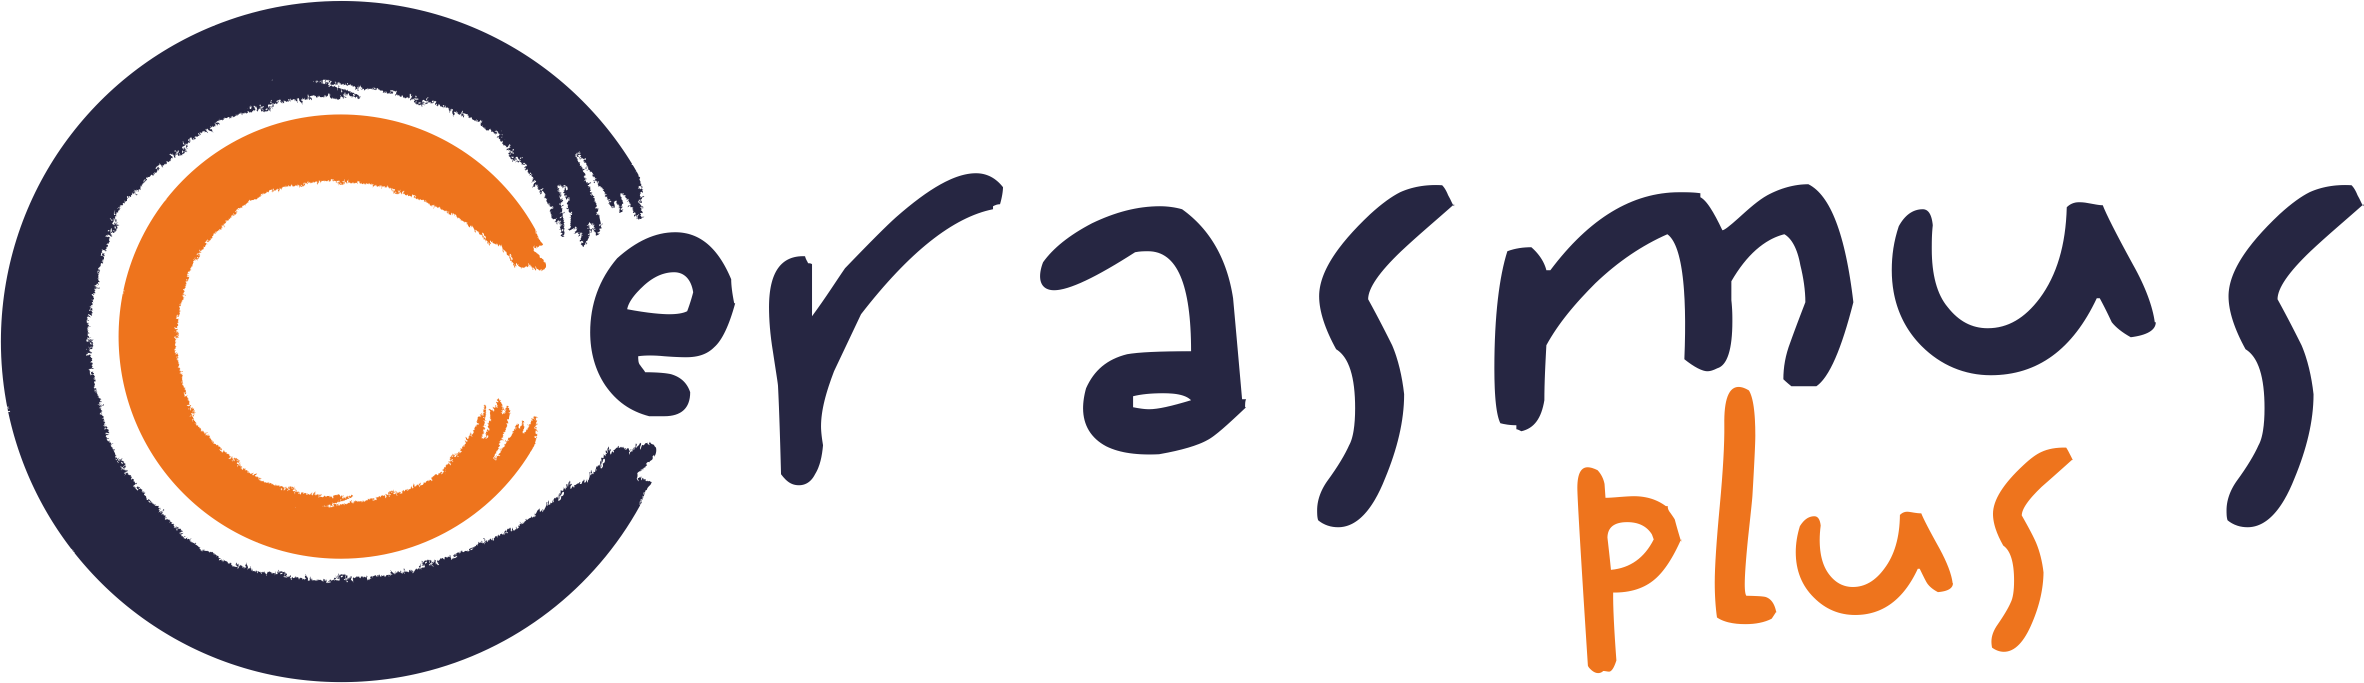 CErasmus+ Logo